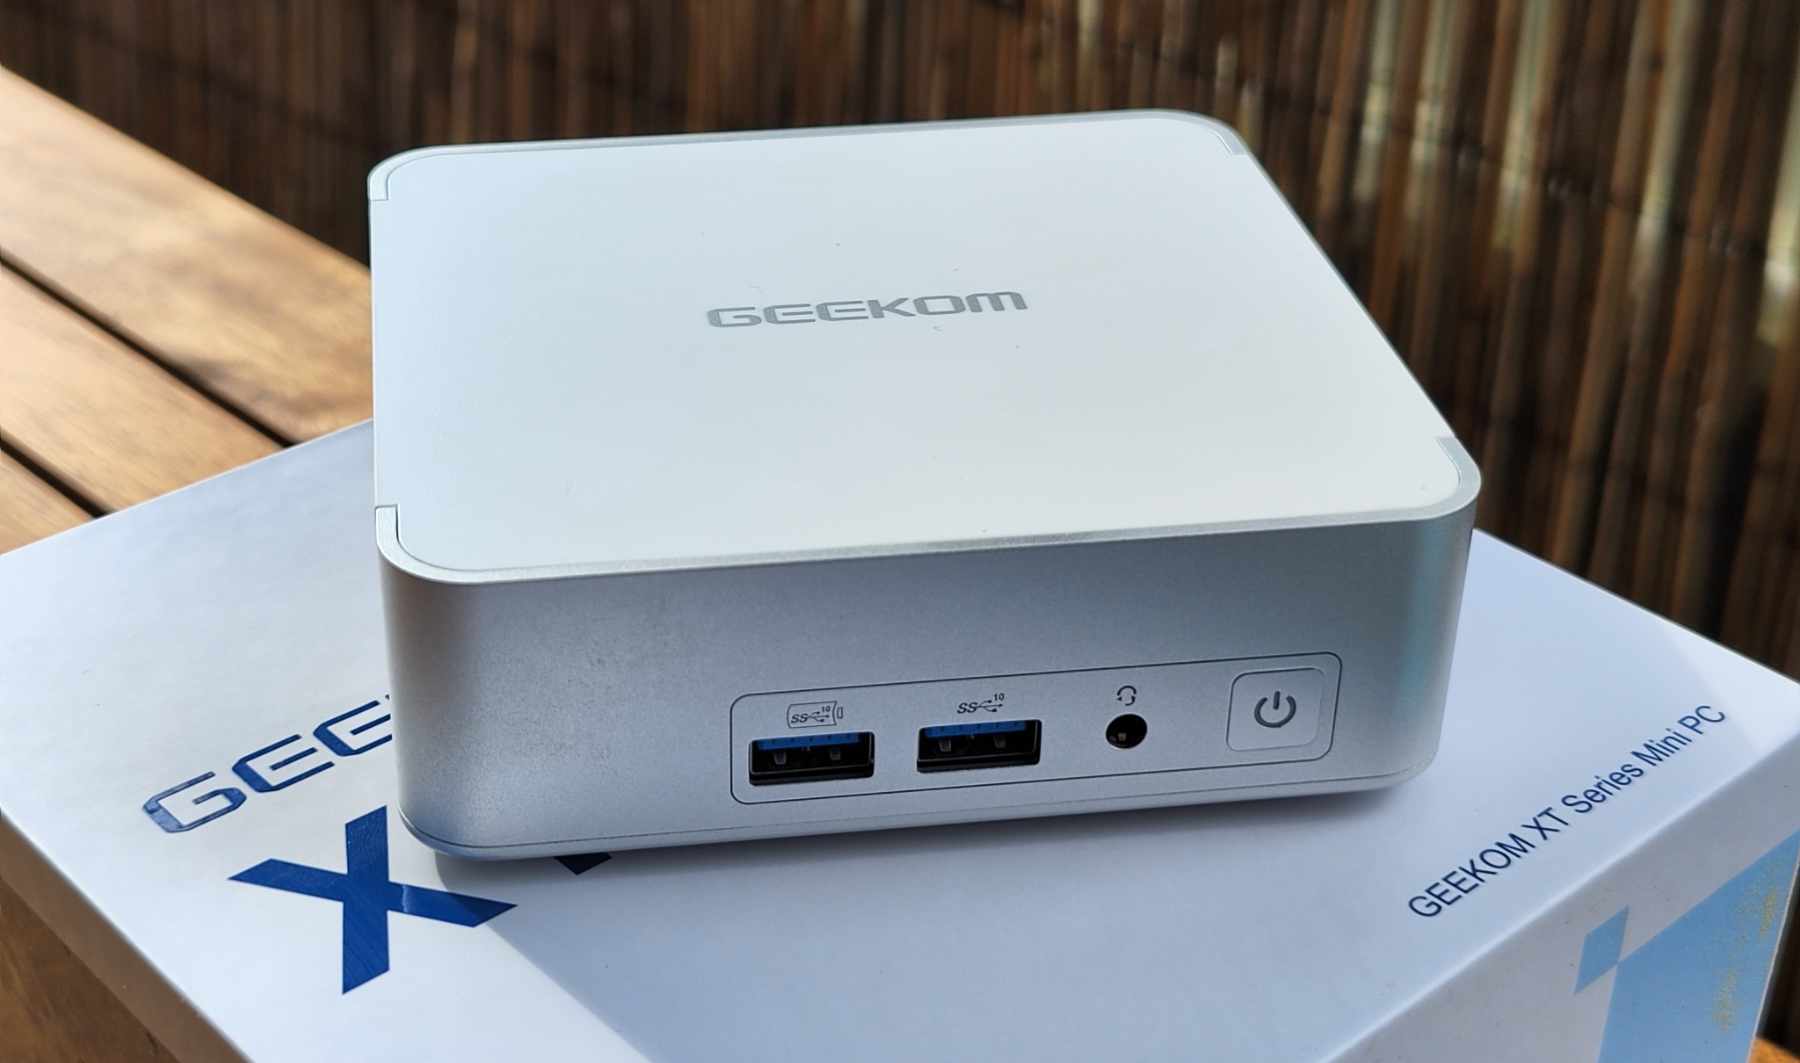 Der Geekom XT12 Pro ist ein neuer Mini-PC im wachsenden Repertoire des Anbieters.